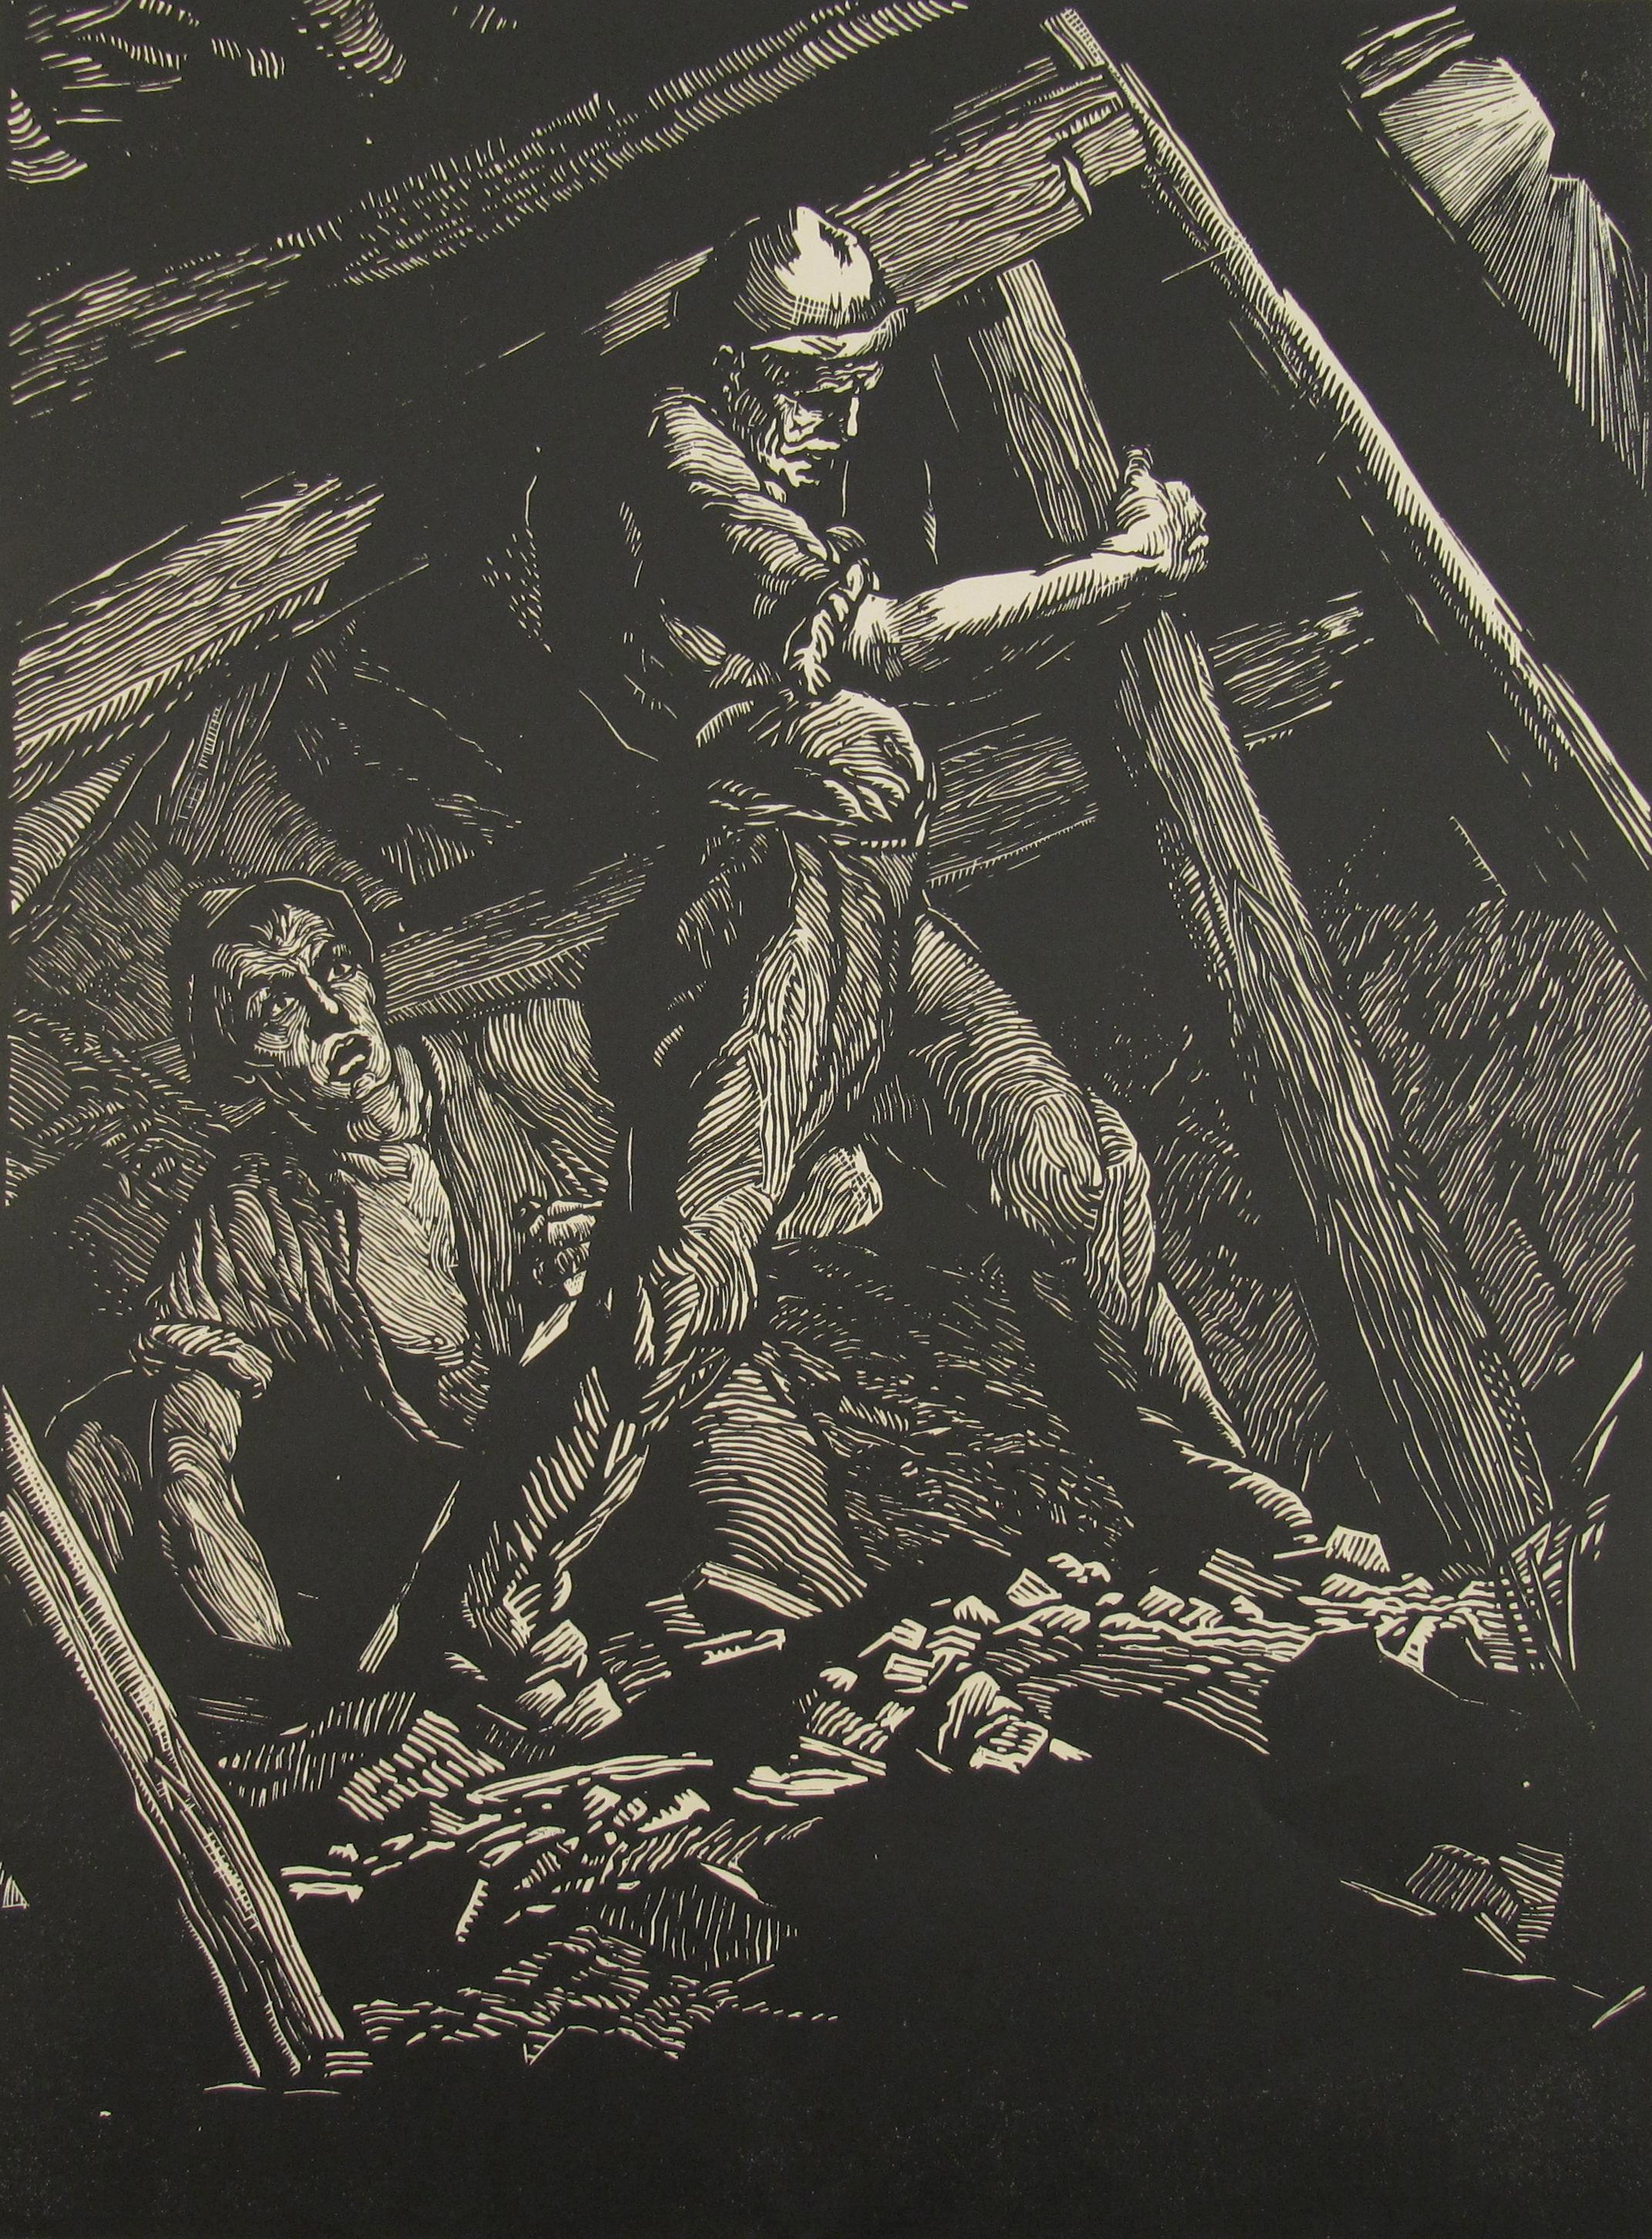 Mineurs de charbon - INDUSTRIAL ART - École allemande d'avant-guerre - Grande gravure sur bois signée